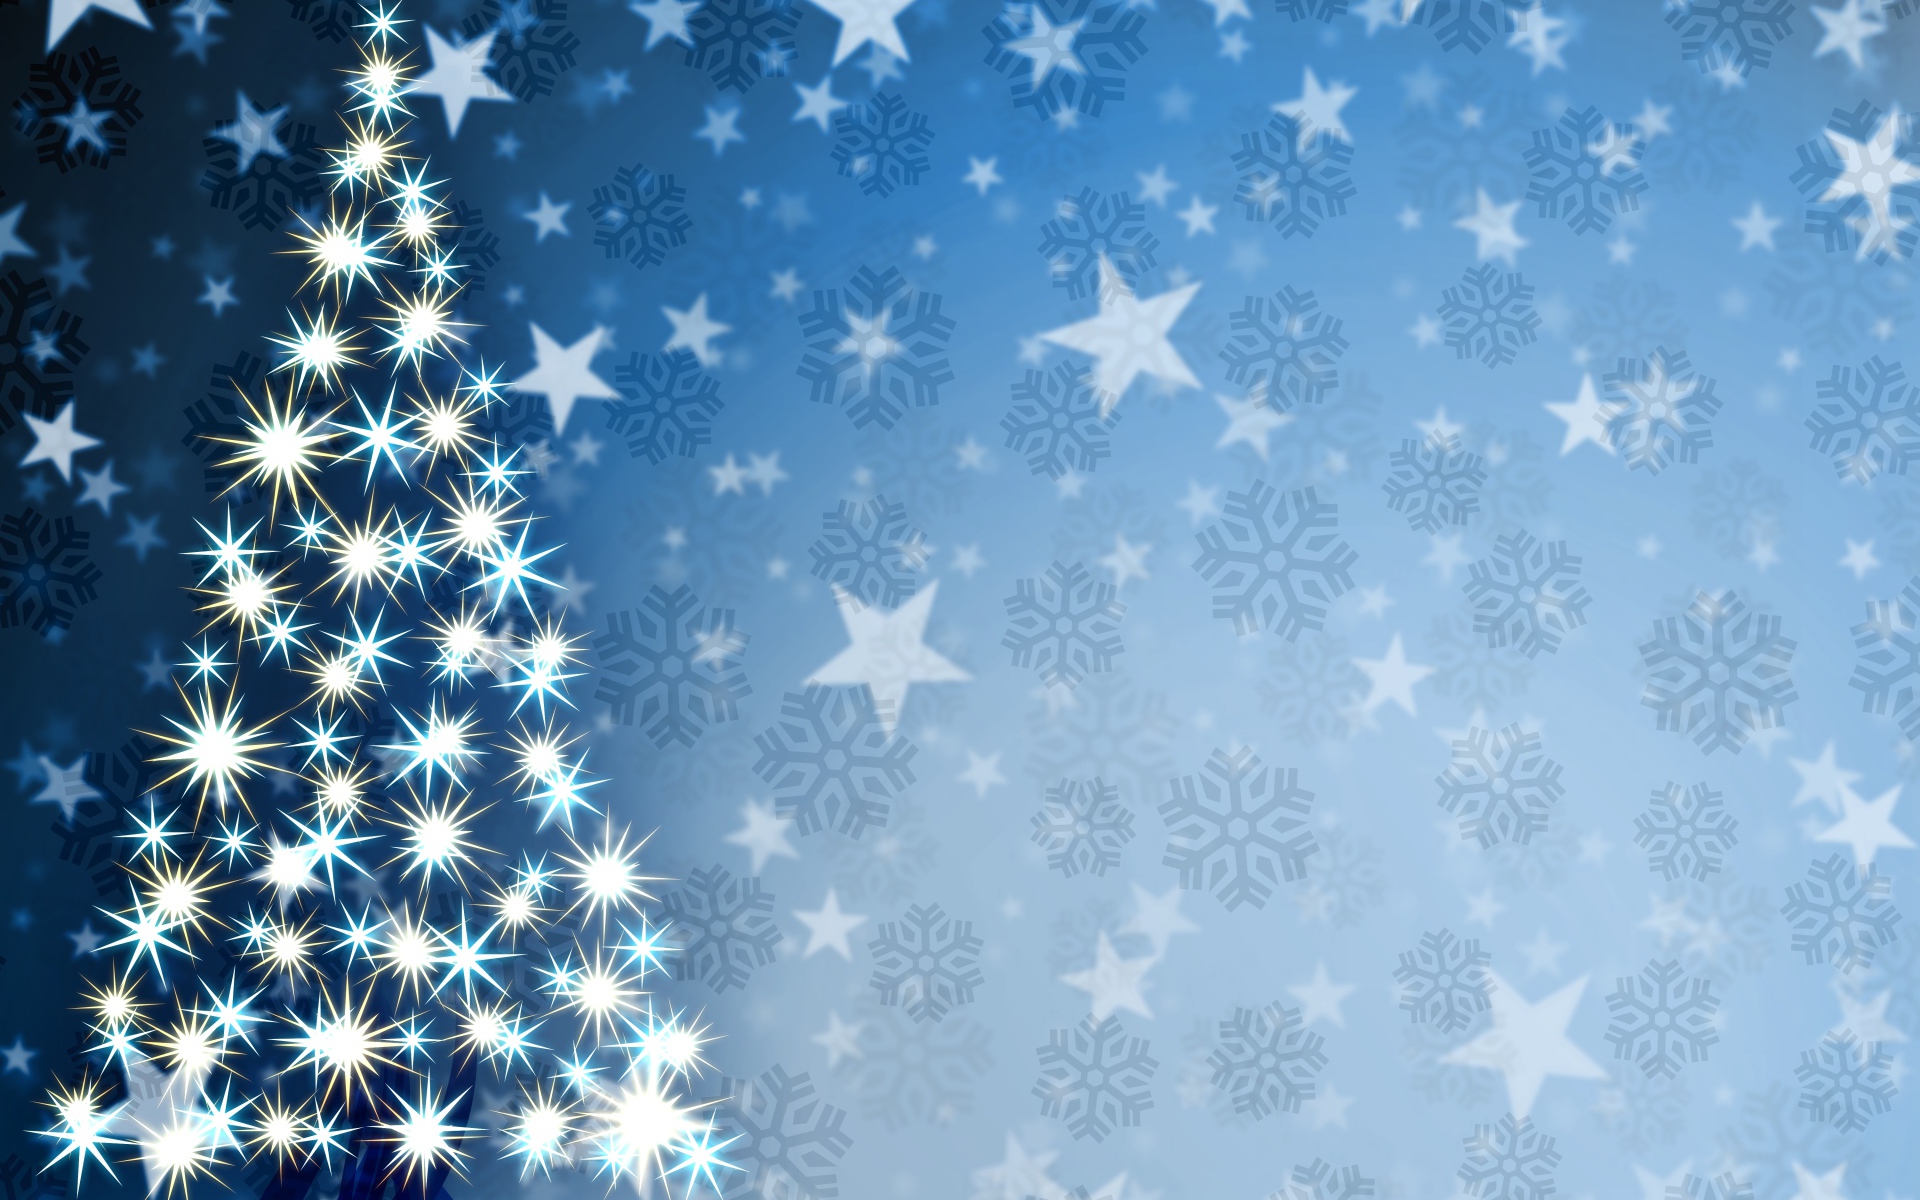 Елка на фоне звезд и снежинок - C Рождеством Христовым поздравительные картинки